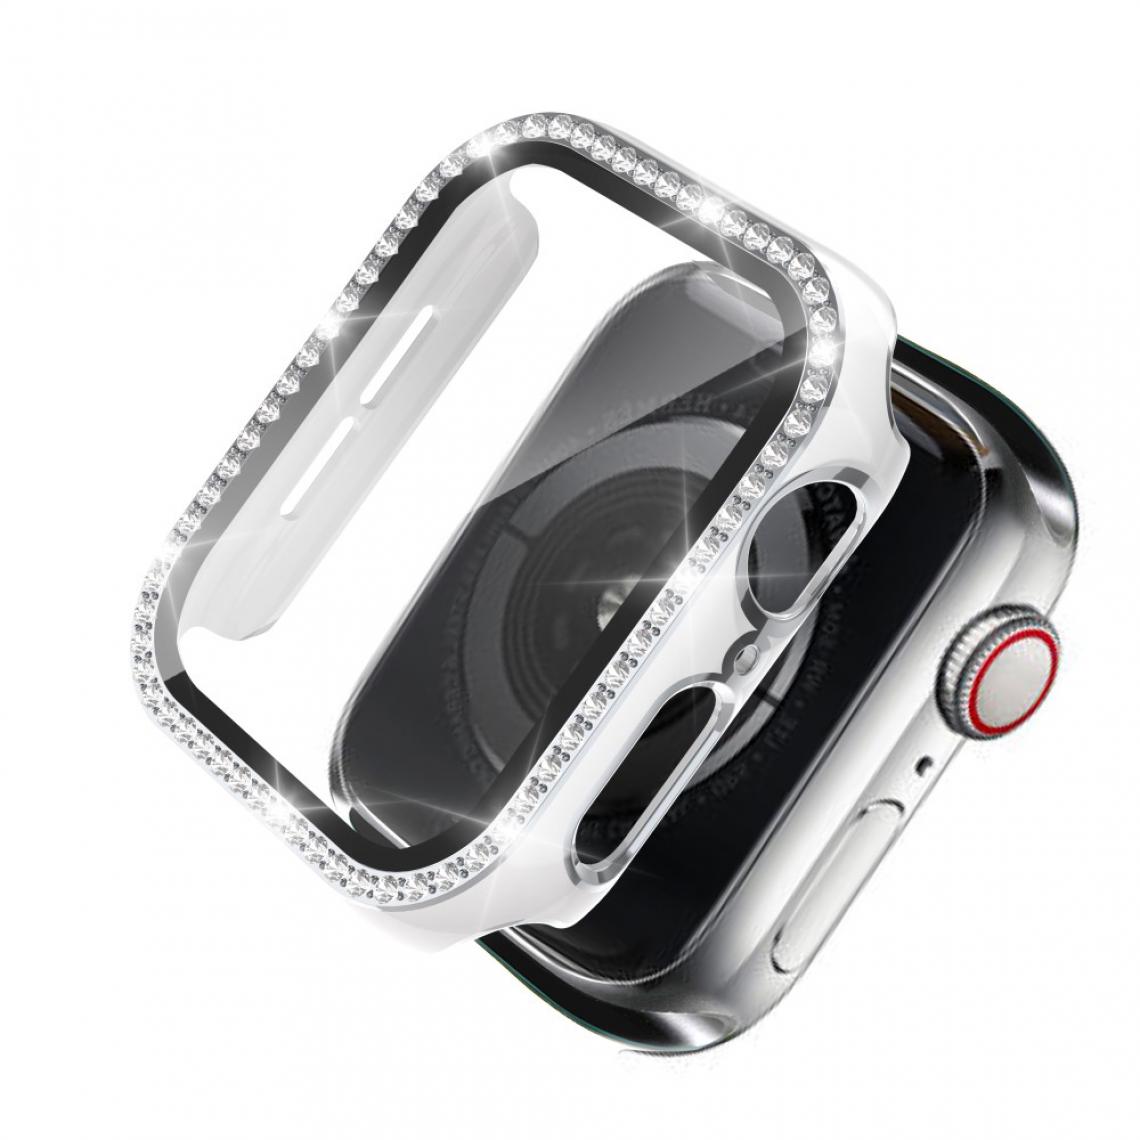 Other - Coque en TPU Cristal de galvanoplastie bicolore blanc/argent pour votre Apple Watch 1/2/3 38mm - Accessoires bracelet connecté